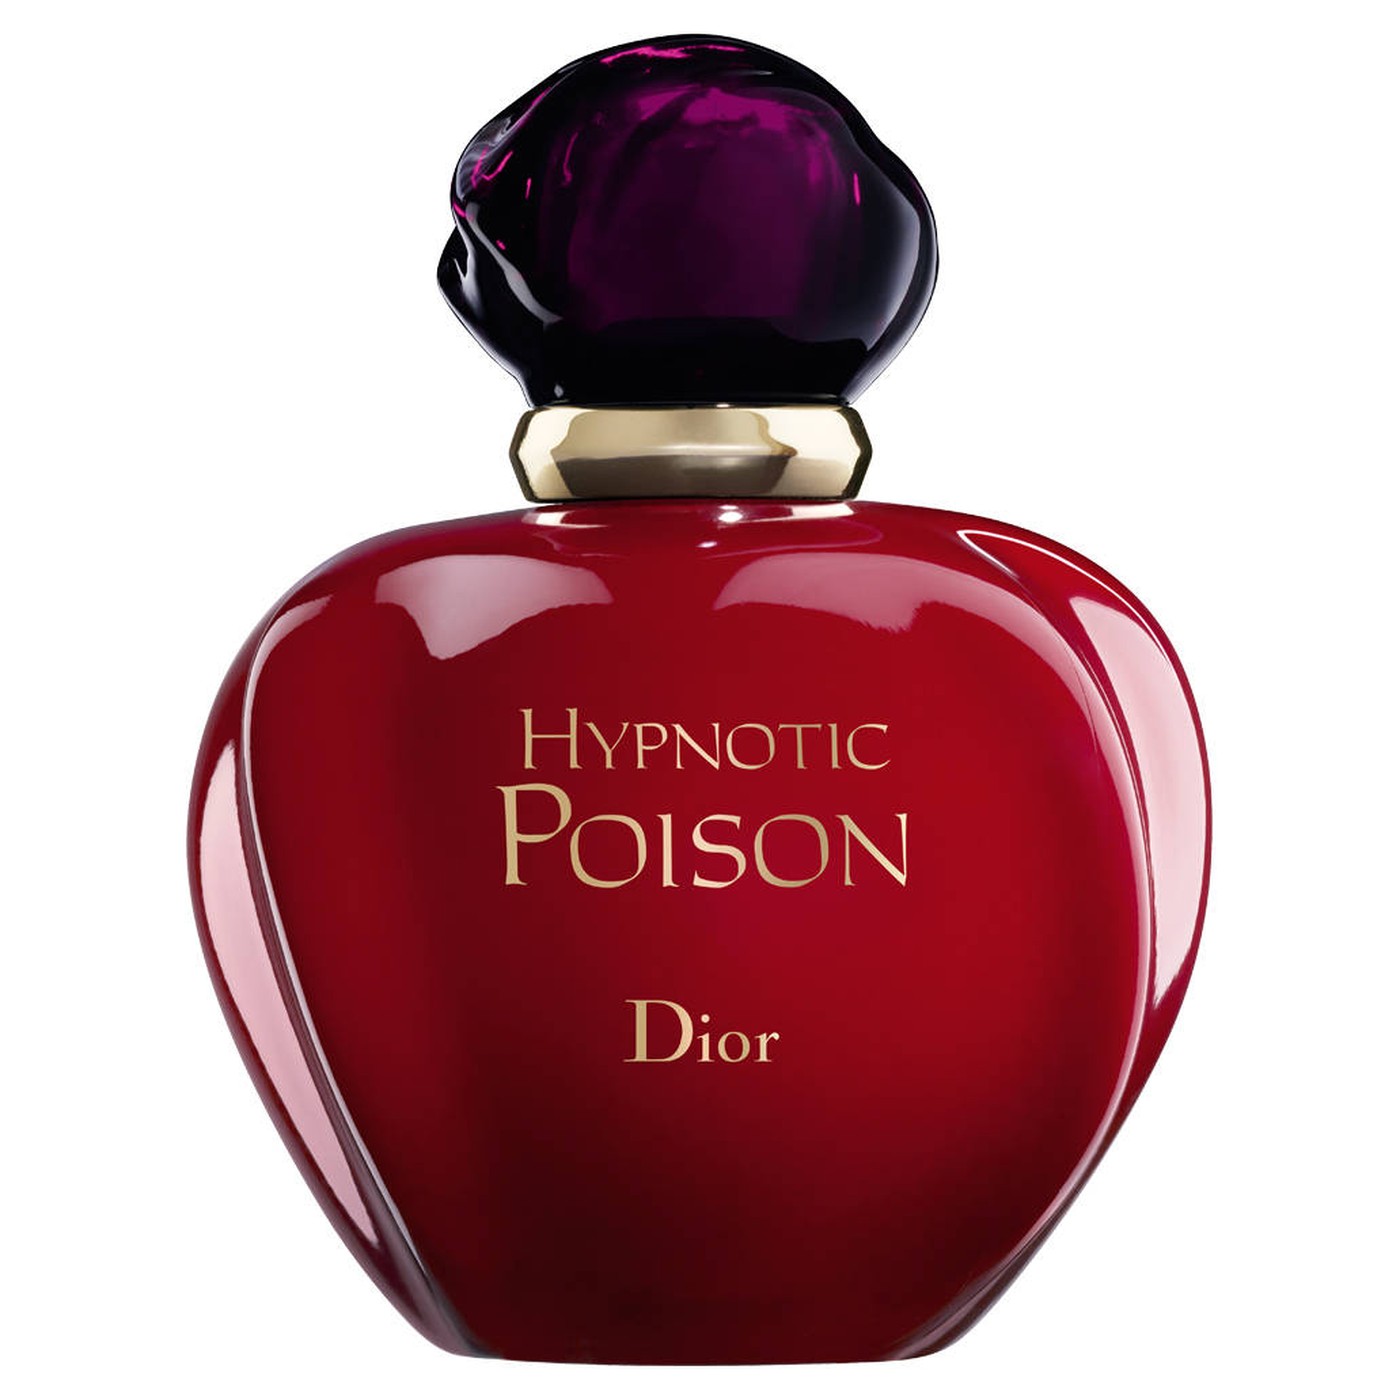 Туалетная вода пуазон. Dior туалетная вода Hypnotic Poison. Dior Poison 100 ml. Hypnotic Poison – Christian Dior 1998. Christian Dior Poison Hypnotic EDP.